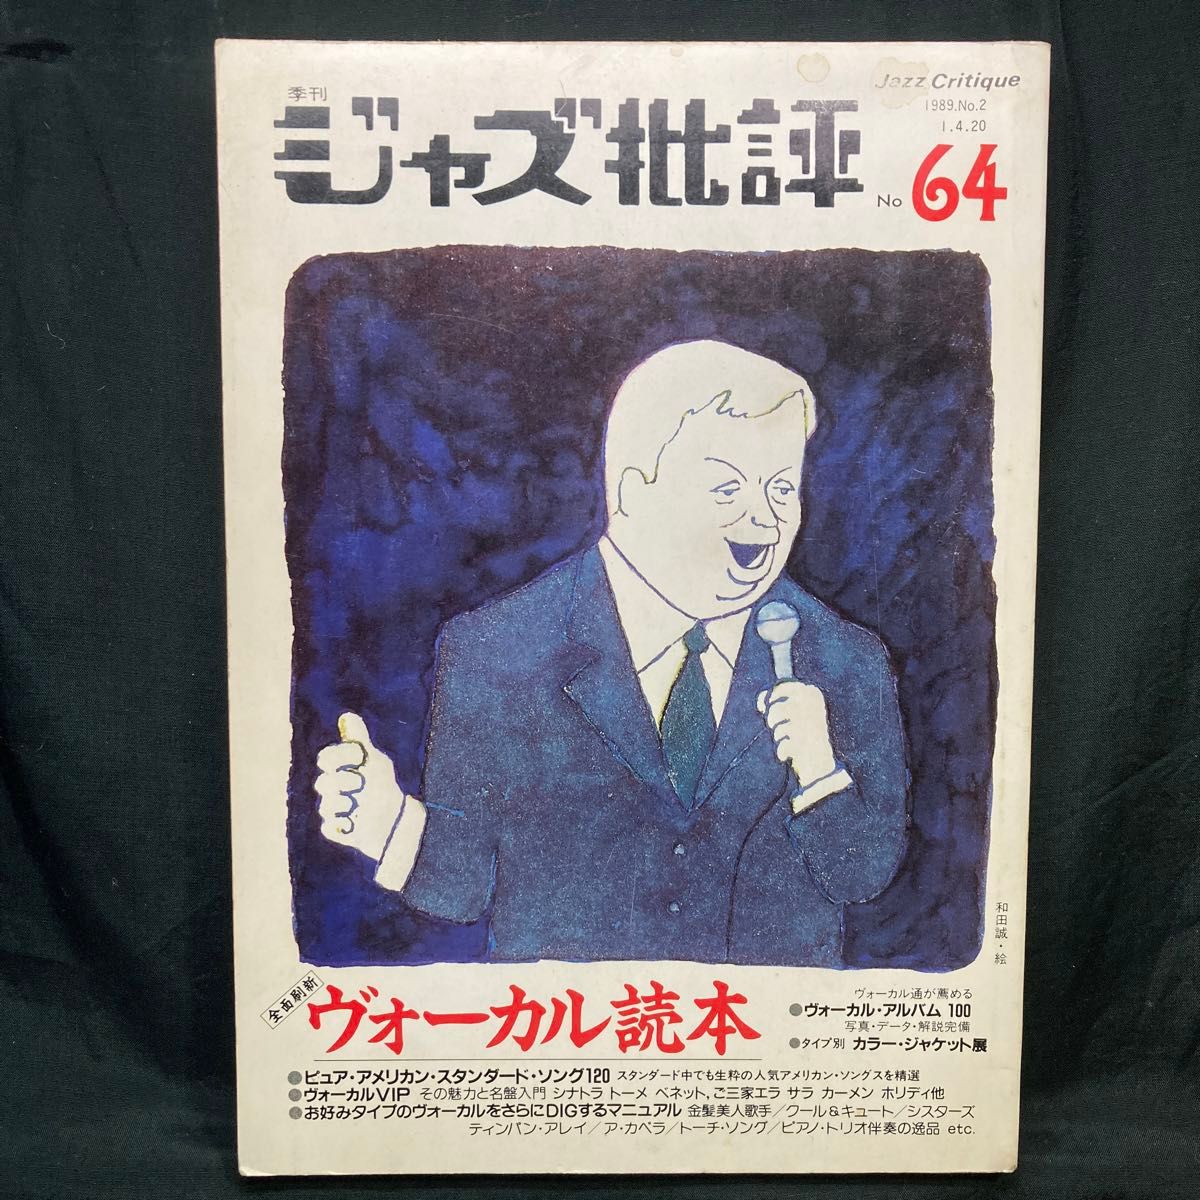 季刊 ジャズ批評 No.64 特集: 全面刷新 ヴォーカル読本  1989 ジャズ批評社